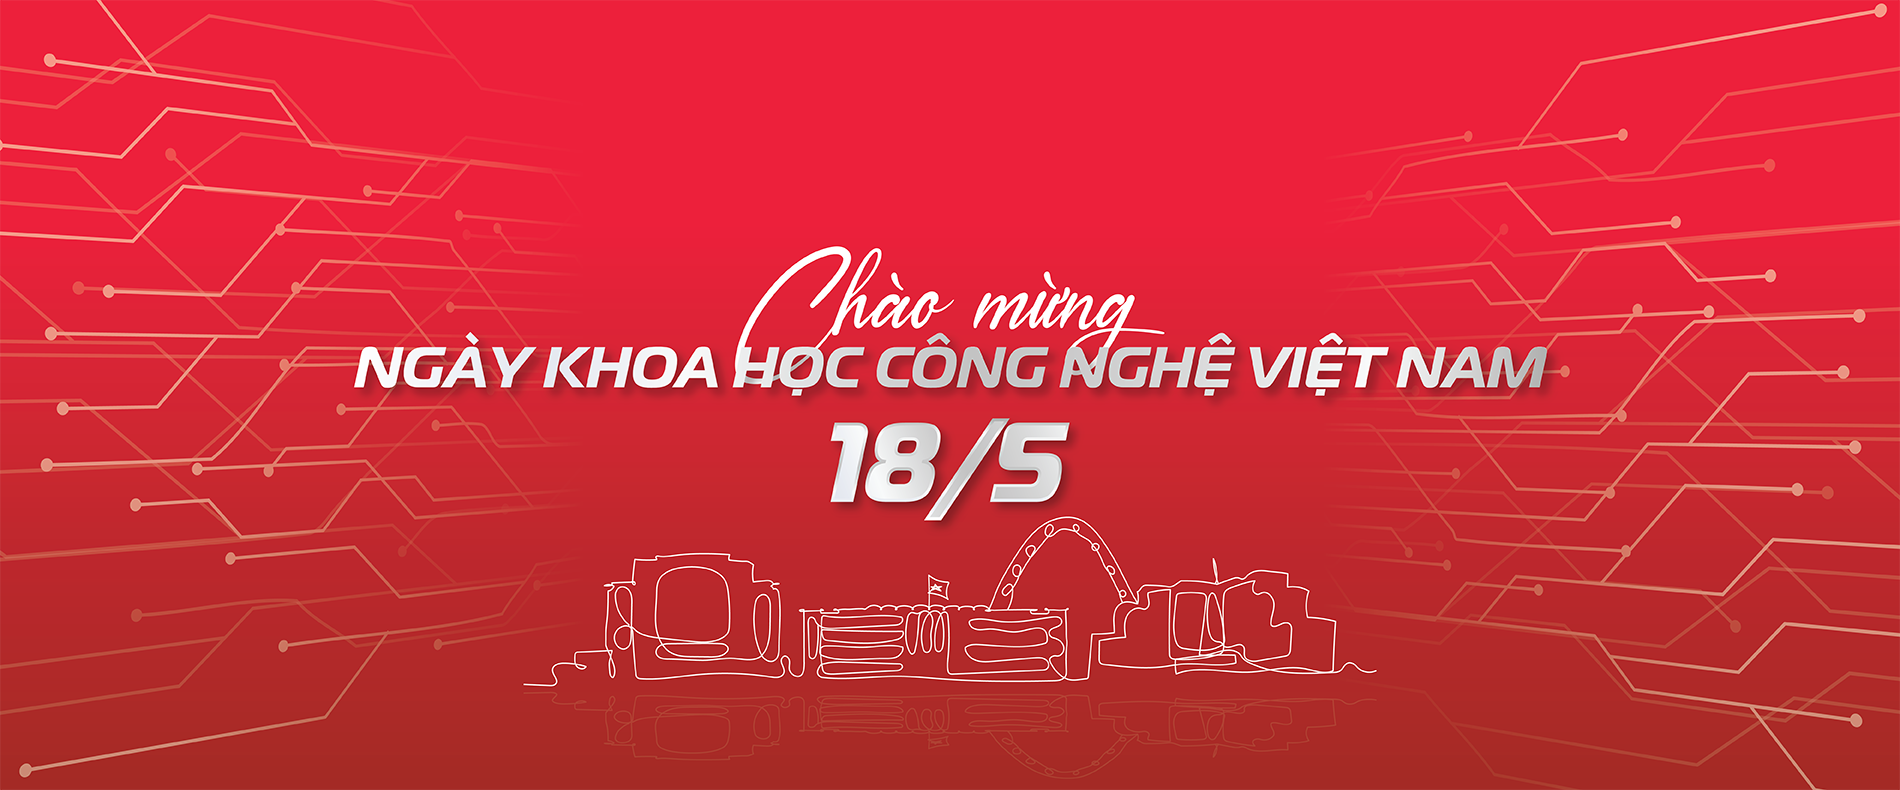 Ngày Khoa học Công nghệ Việt Nam